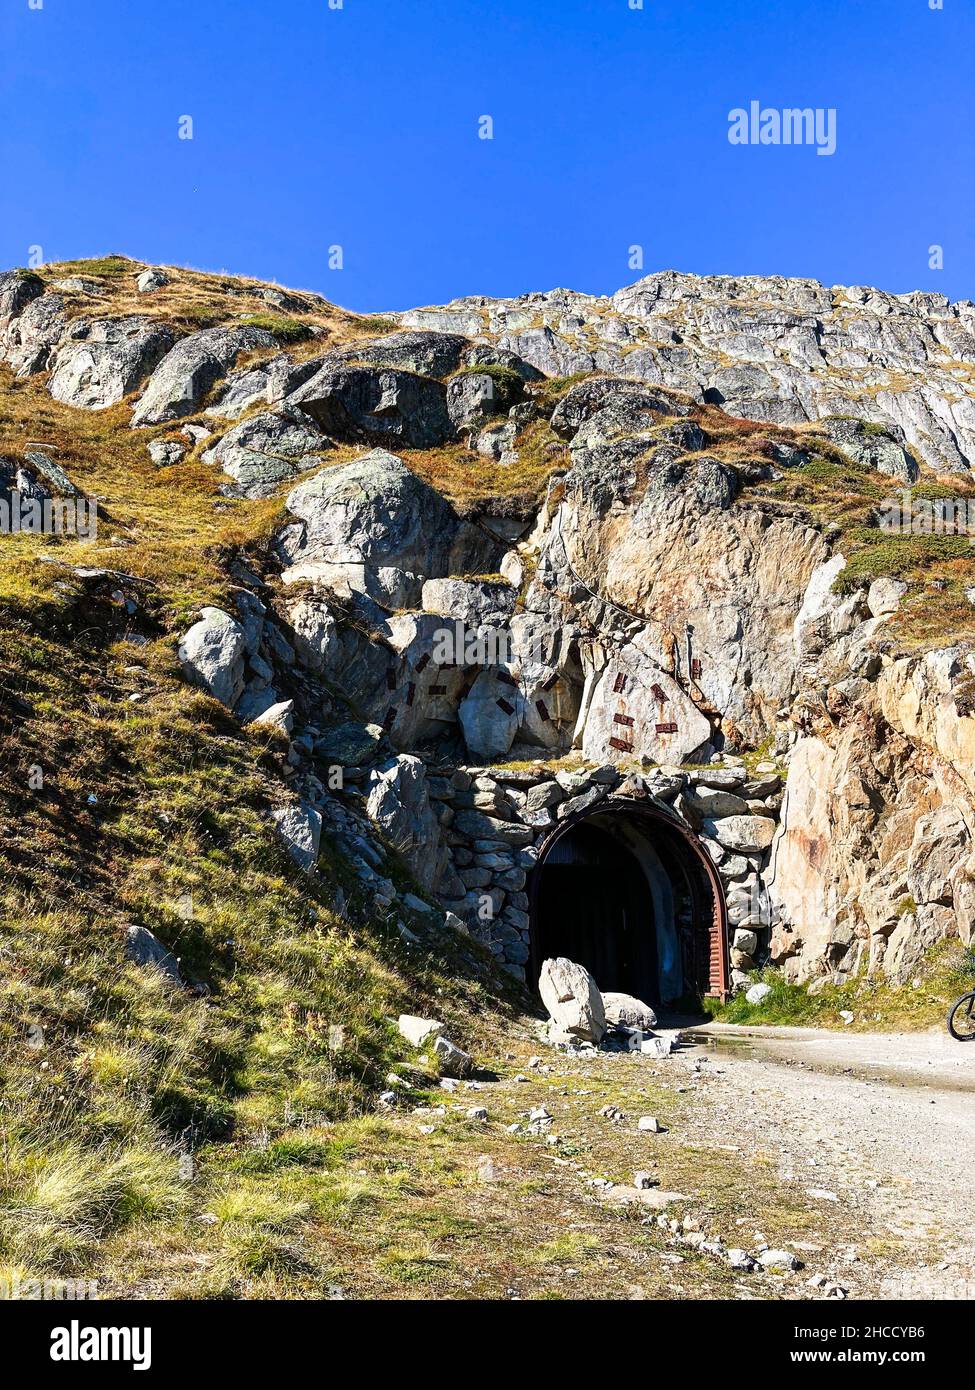 Tunnel through a Mountain near Fiescheralp, Switzerland Stock Photo